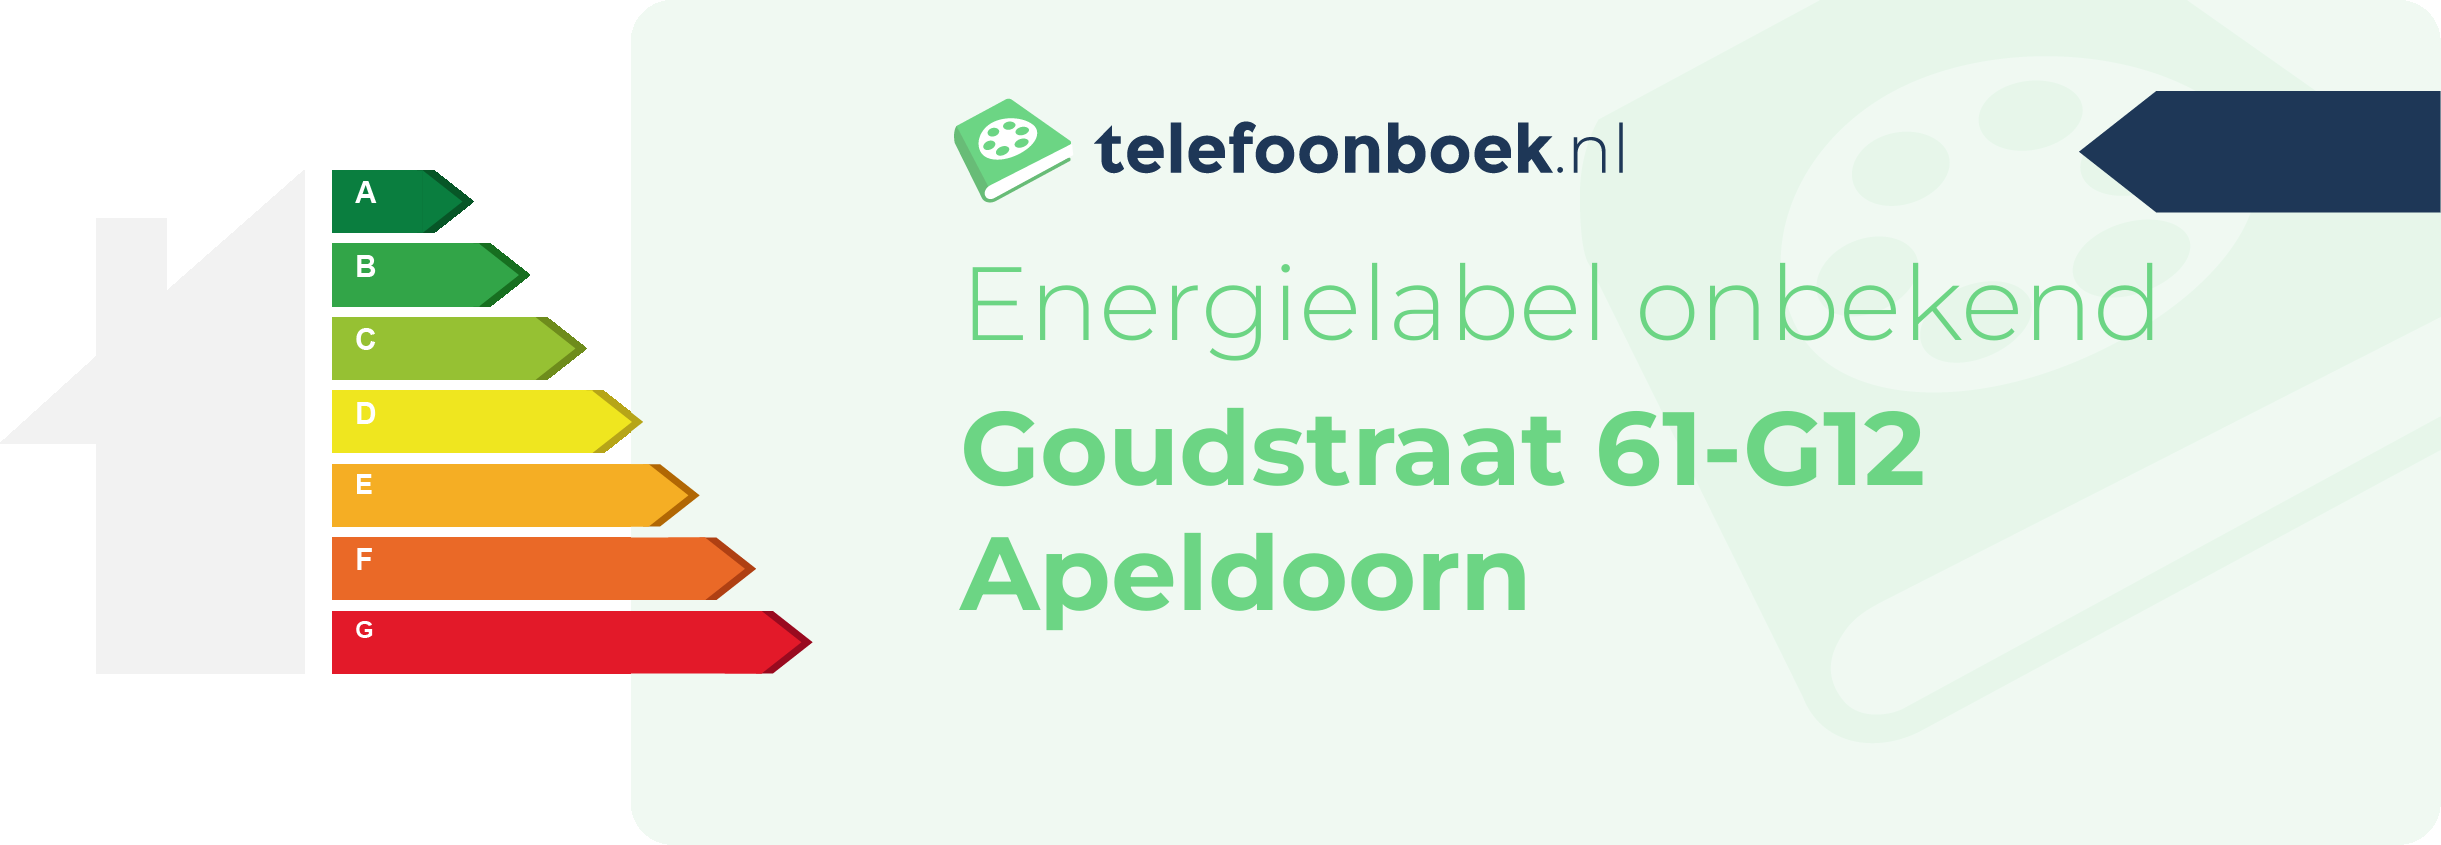 Energielabel Goudstraat 61-G12 Apeldoorn